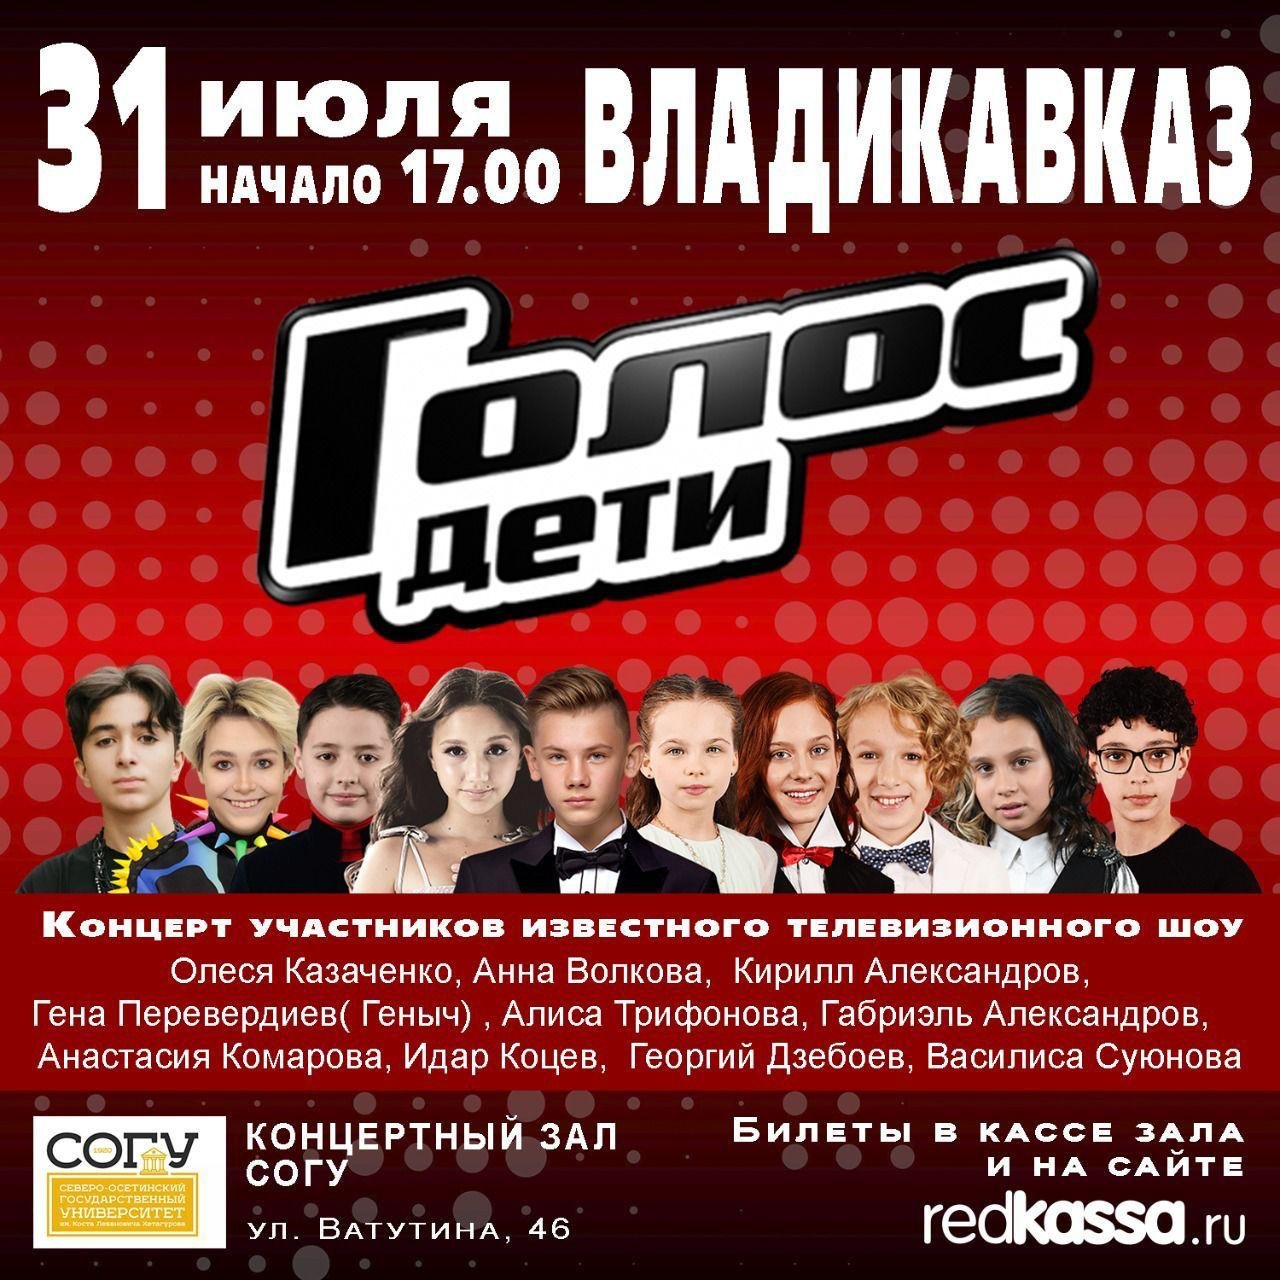 Концерт участника шоу «Голос. Дети» Георгия Дзебоева состоится во Владикавказе